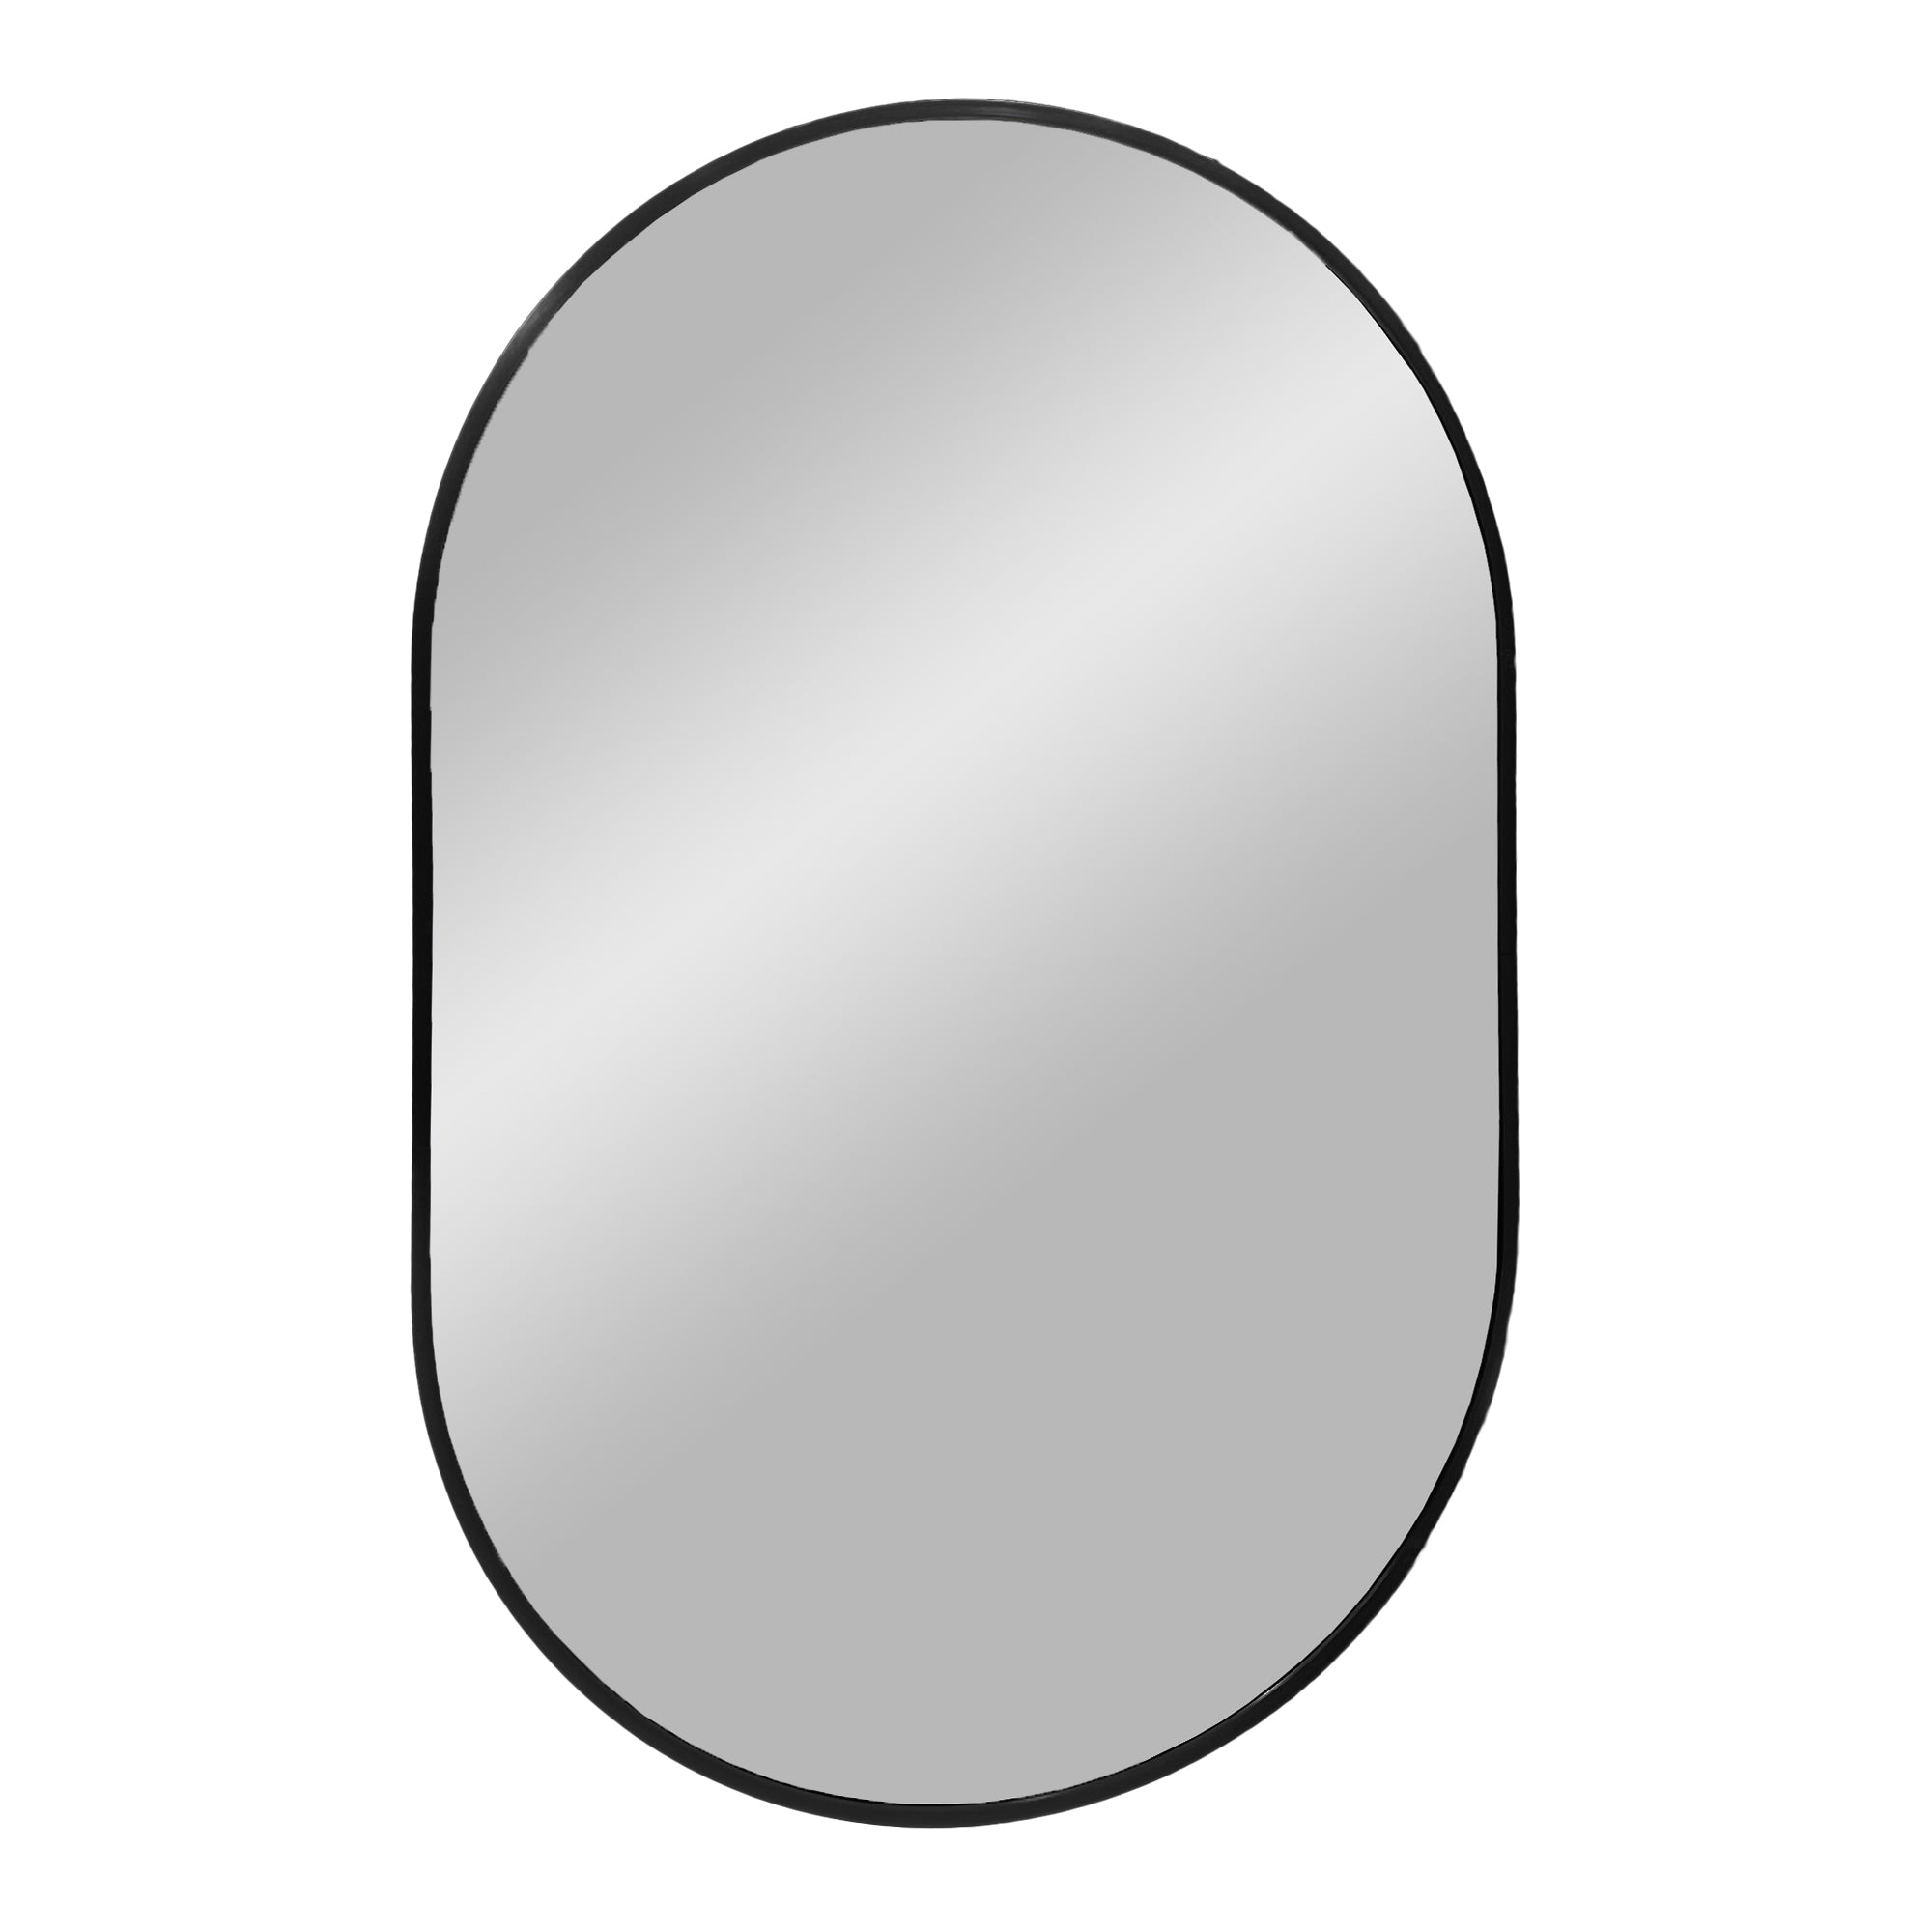 8: Madrid Spejl - Spejl i aluminium, sort, 50x80 cm